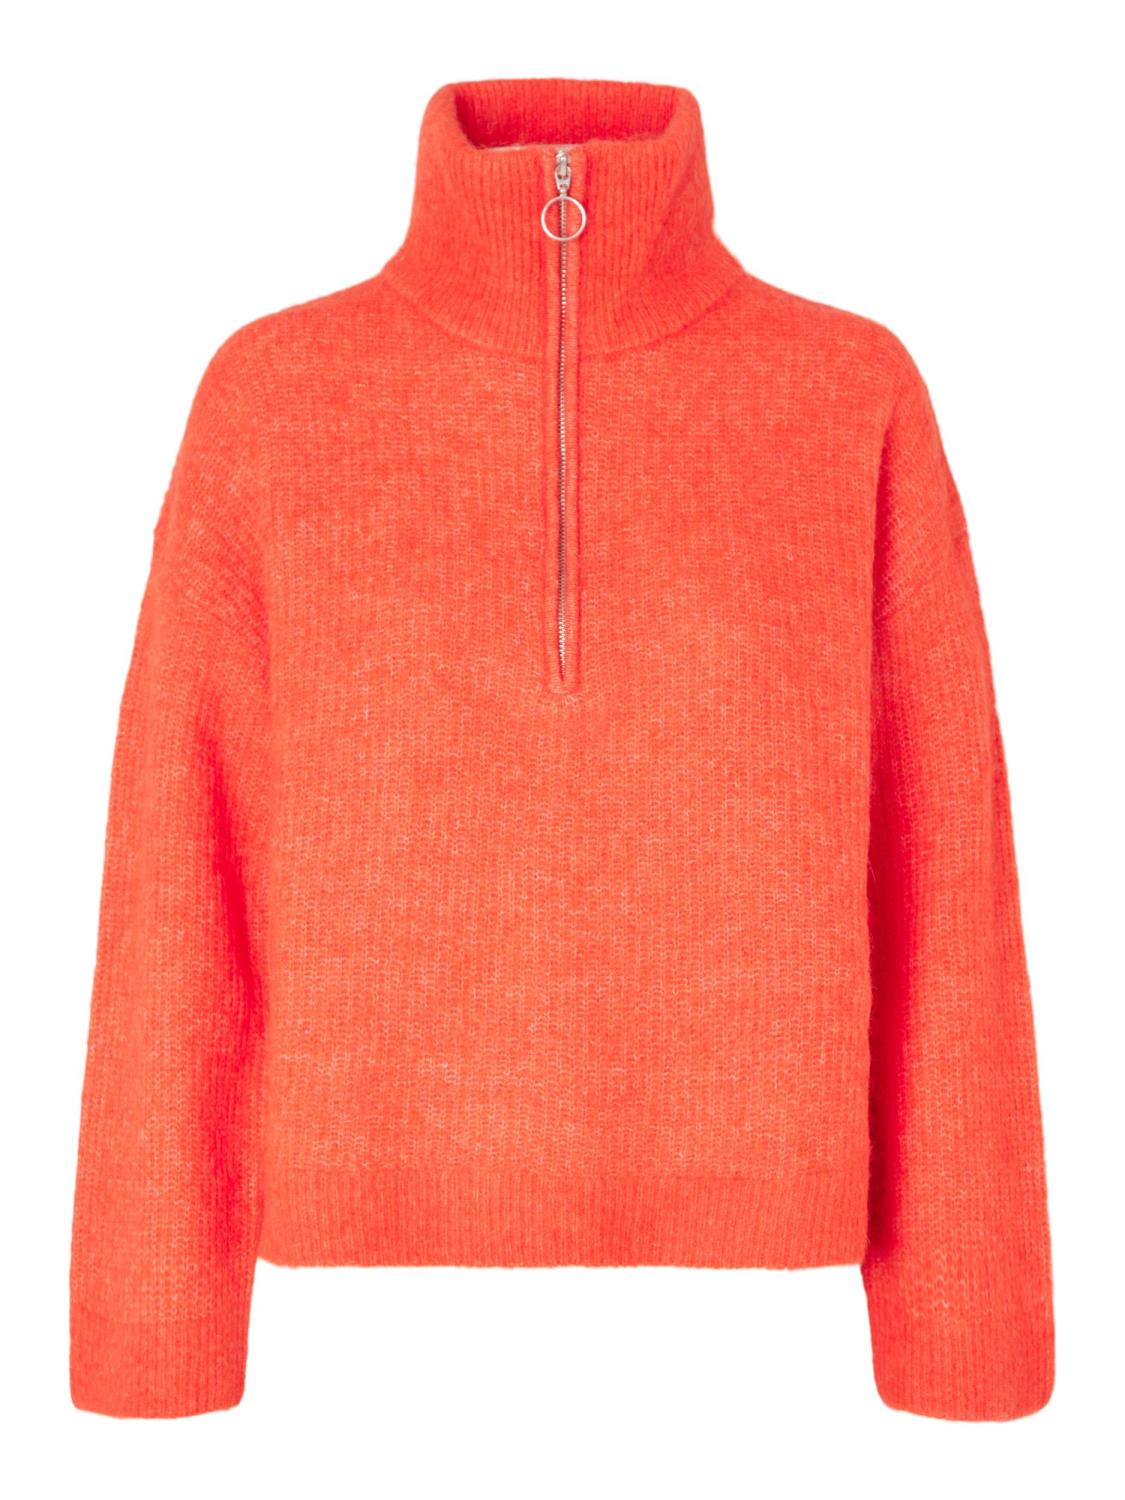 SLFSIA ls knit half zipper Orange